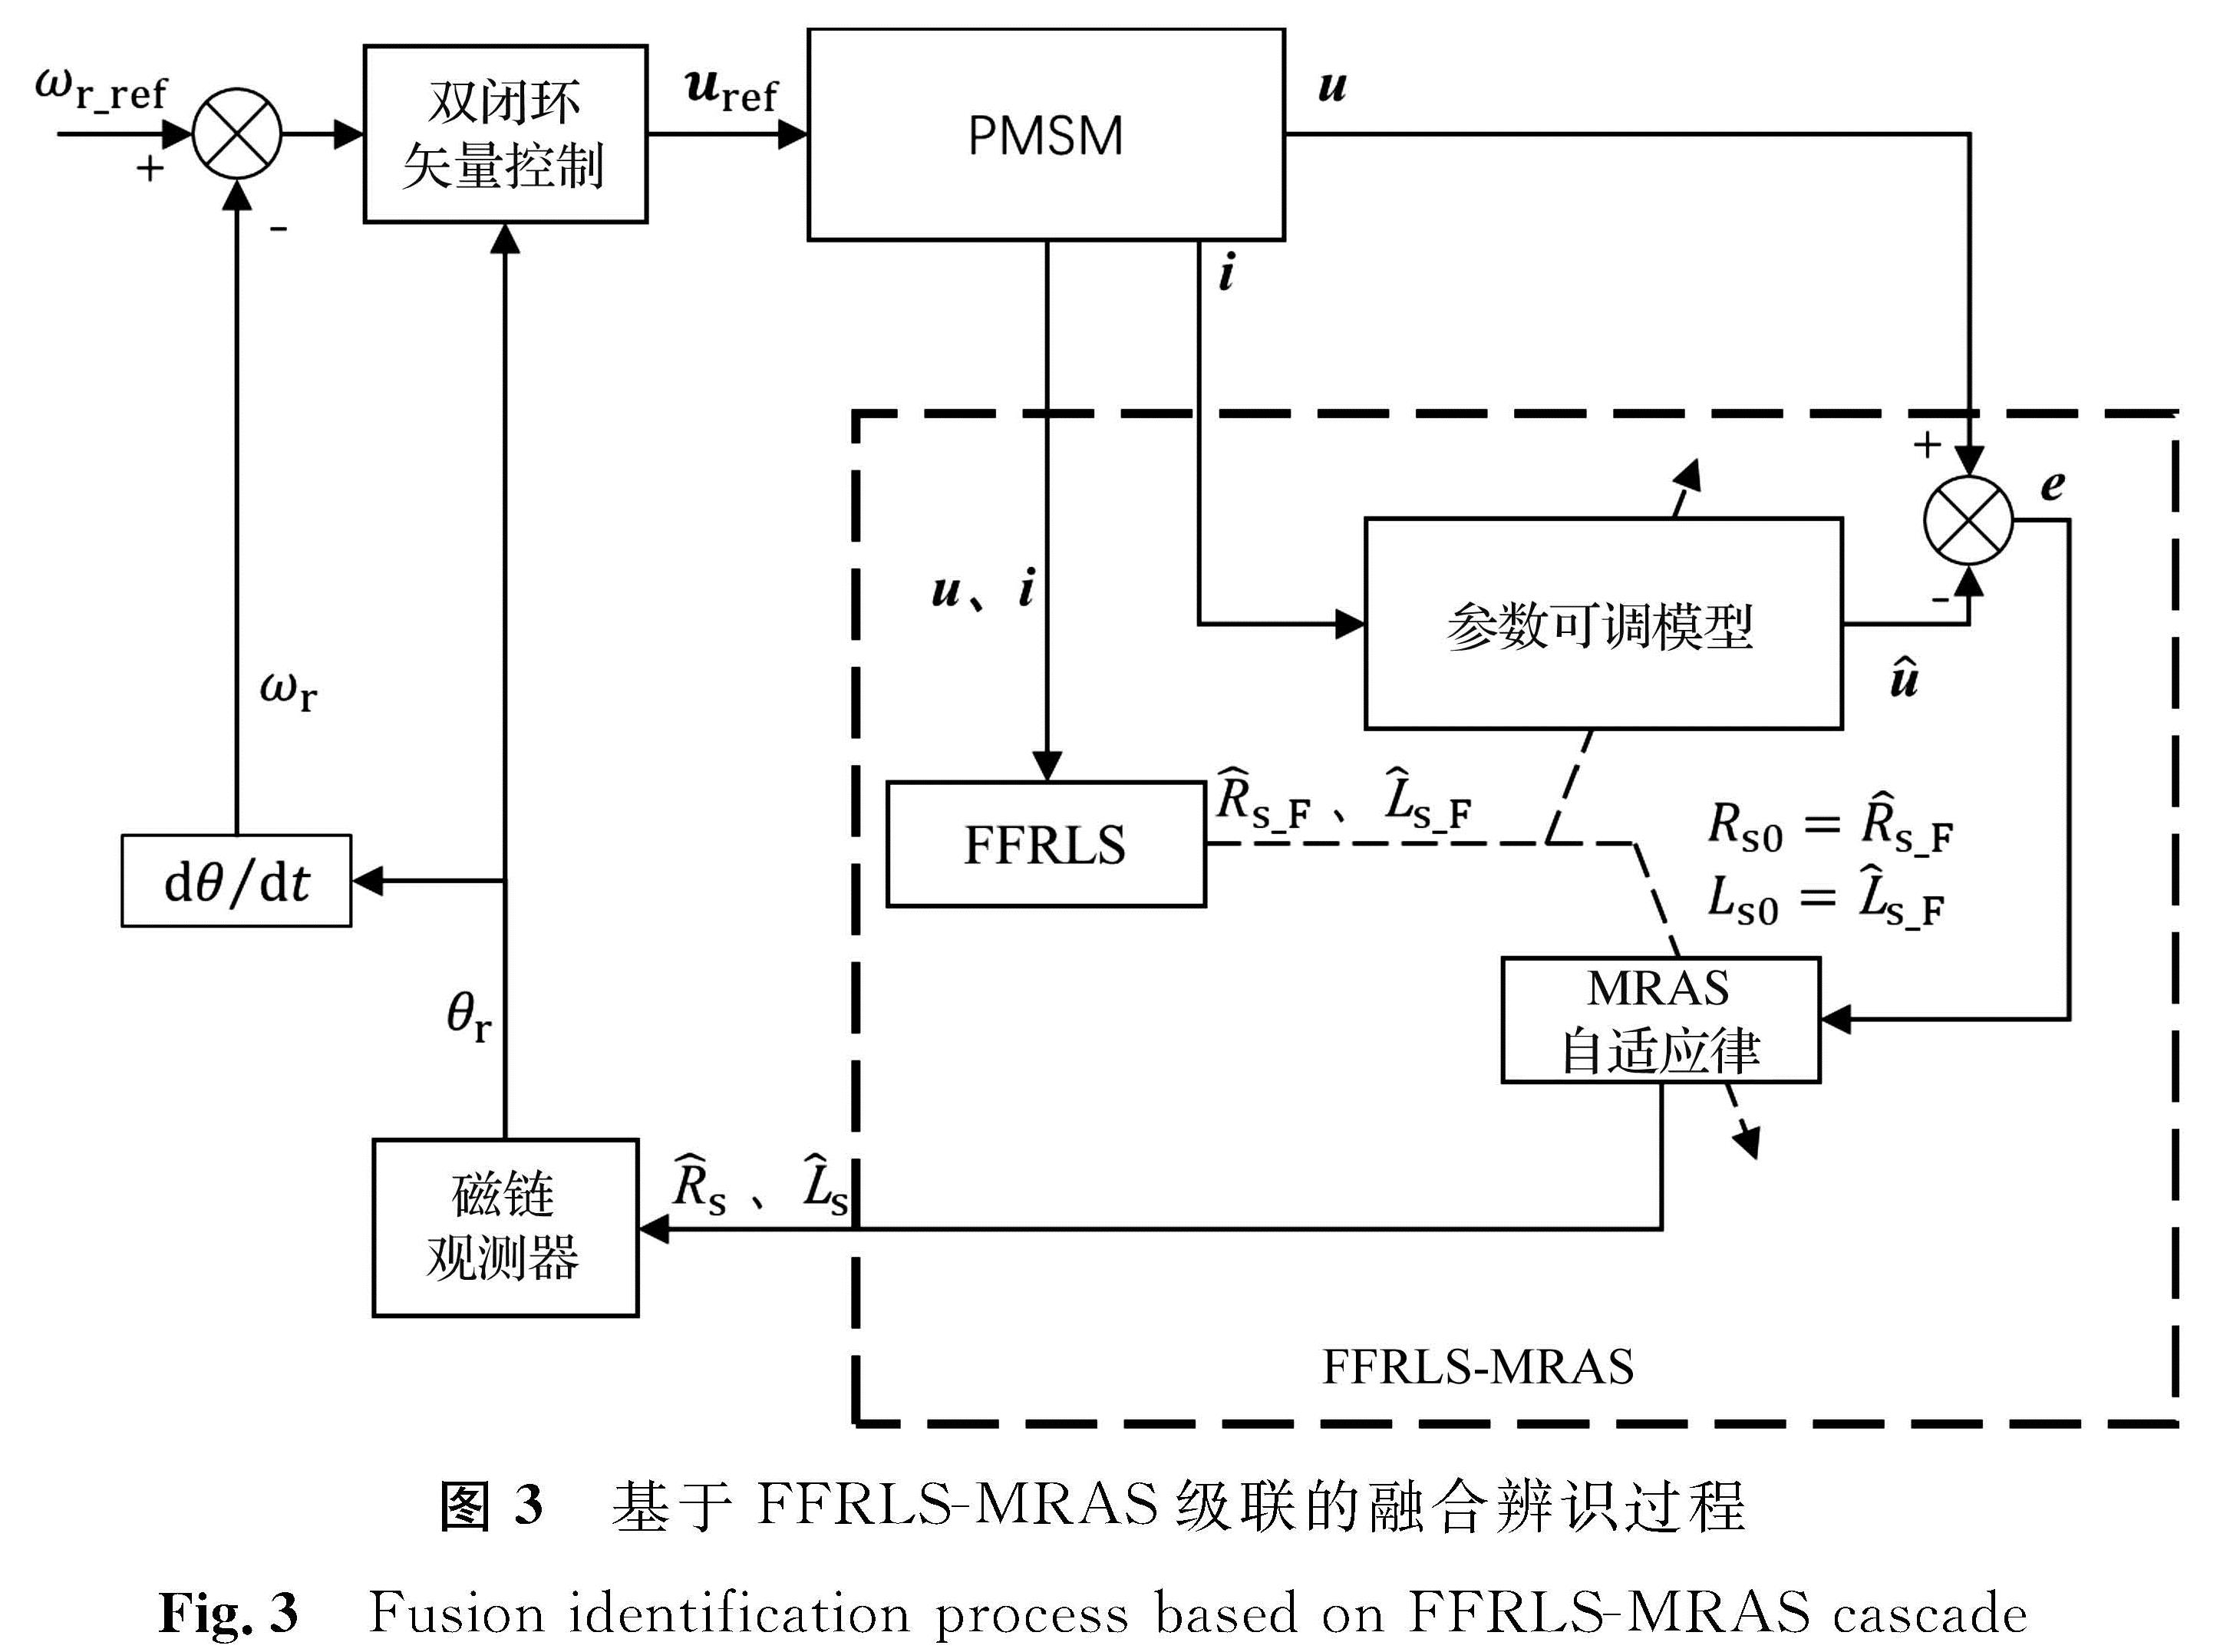 图3 基于FFRLS-MRAS级联的融合辨识过程<br/>Fig.3 Fusion identification process based on FFRLS-MRAS cascade